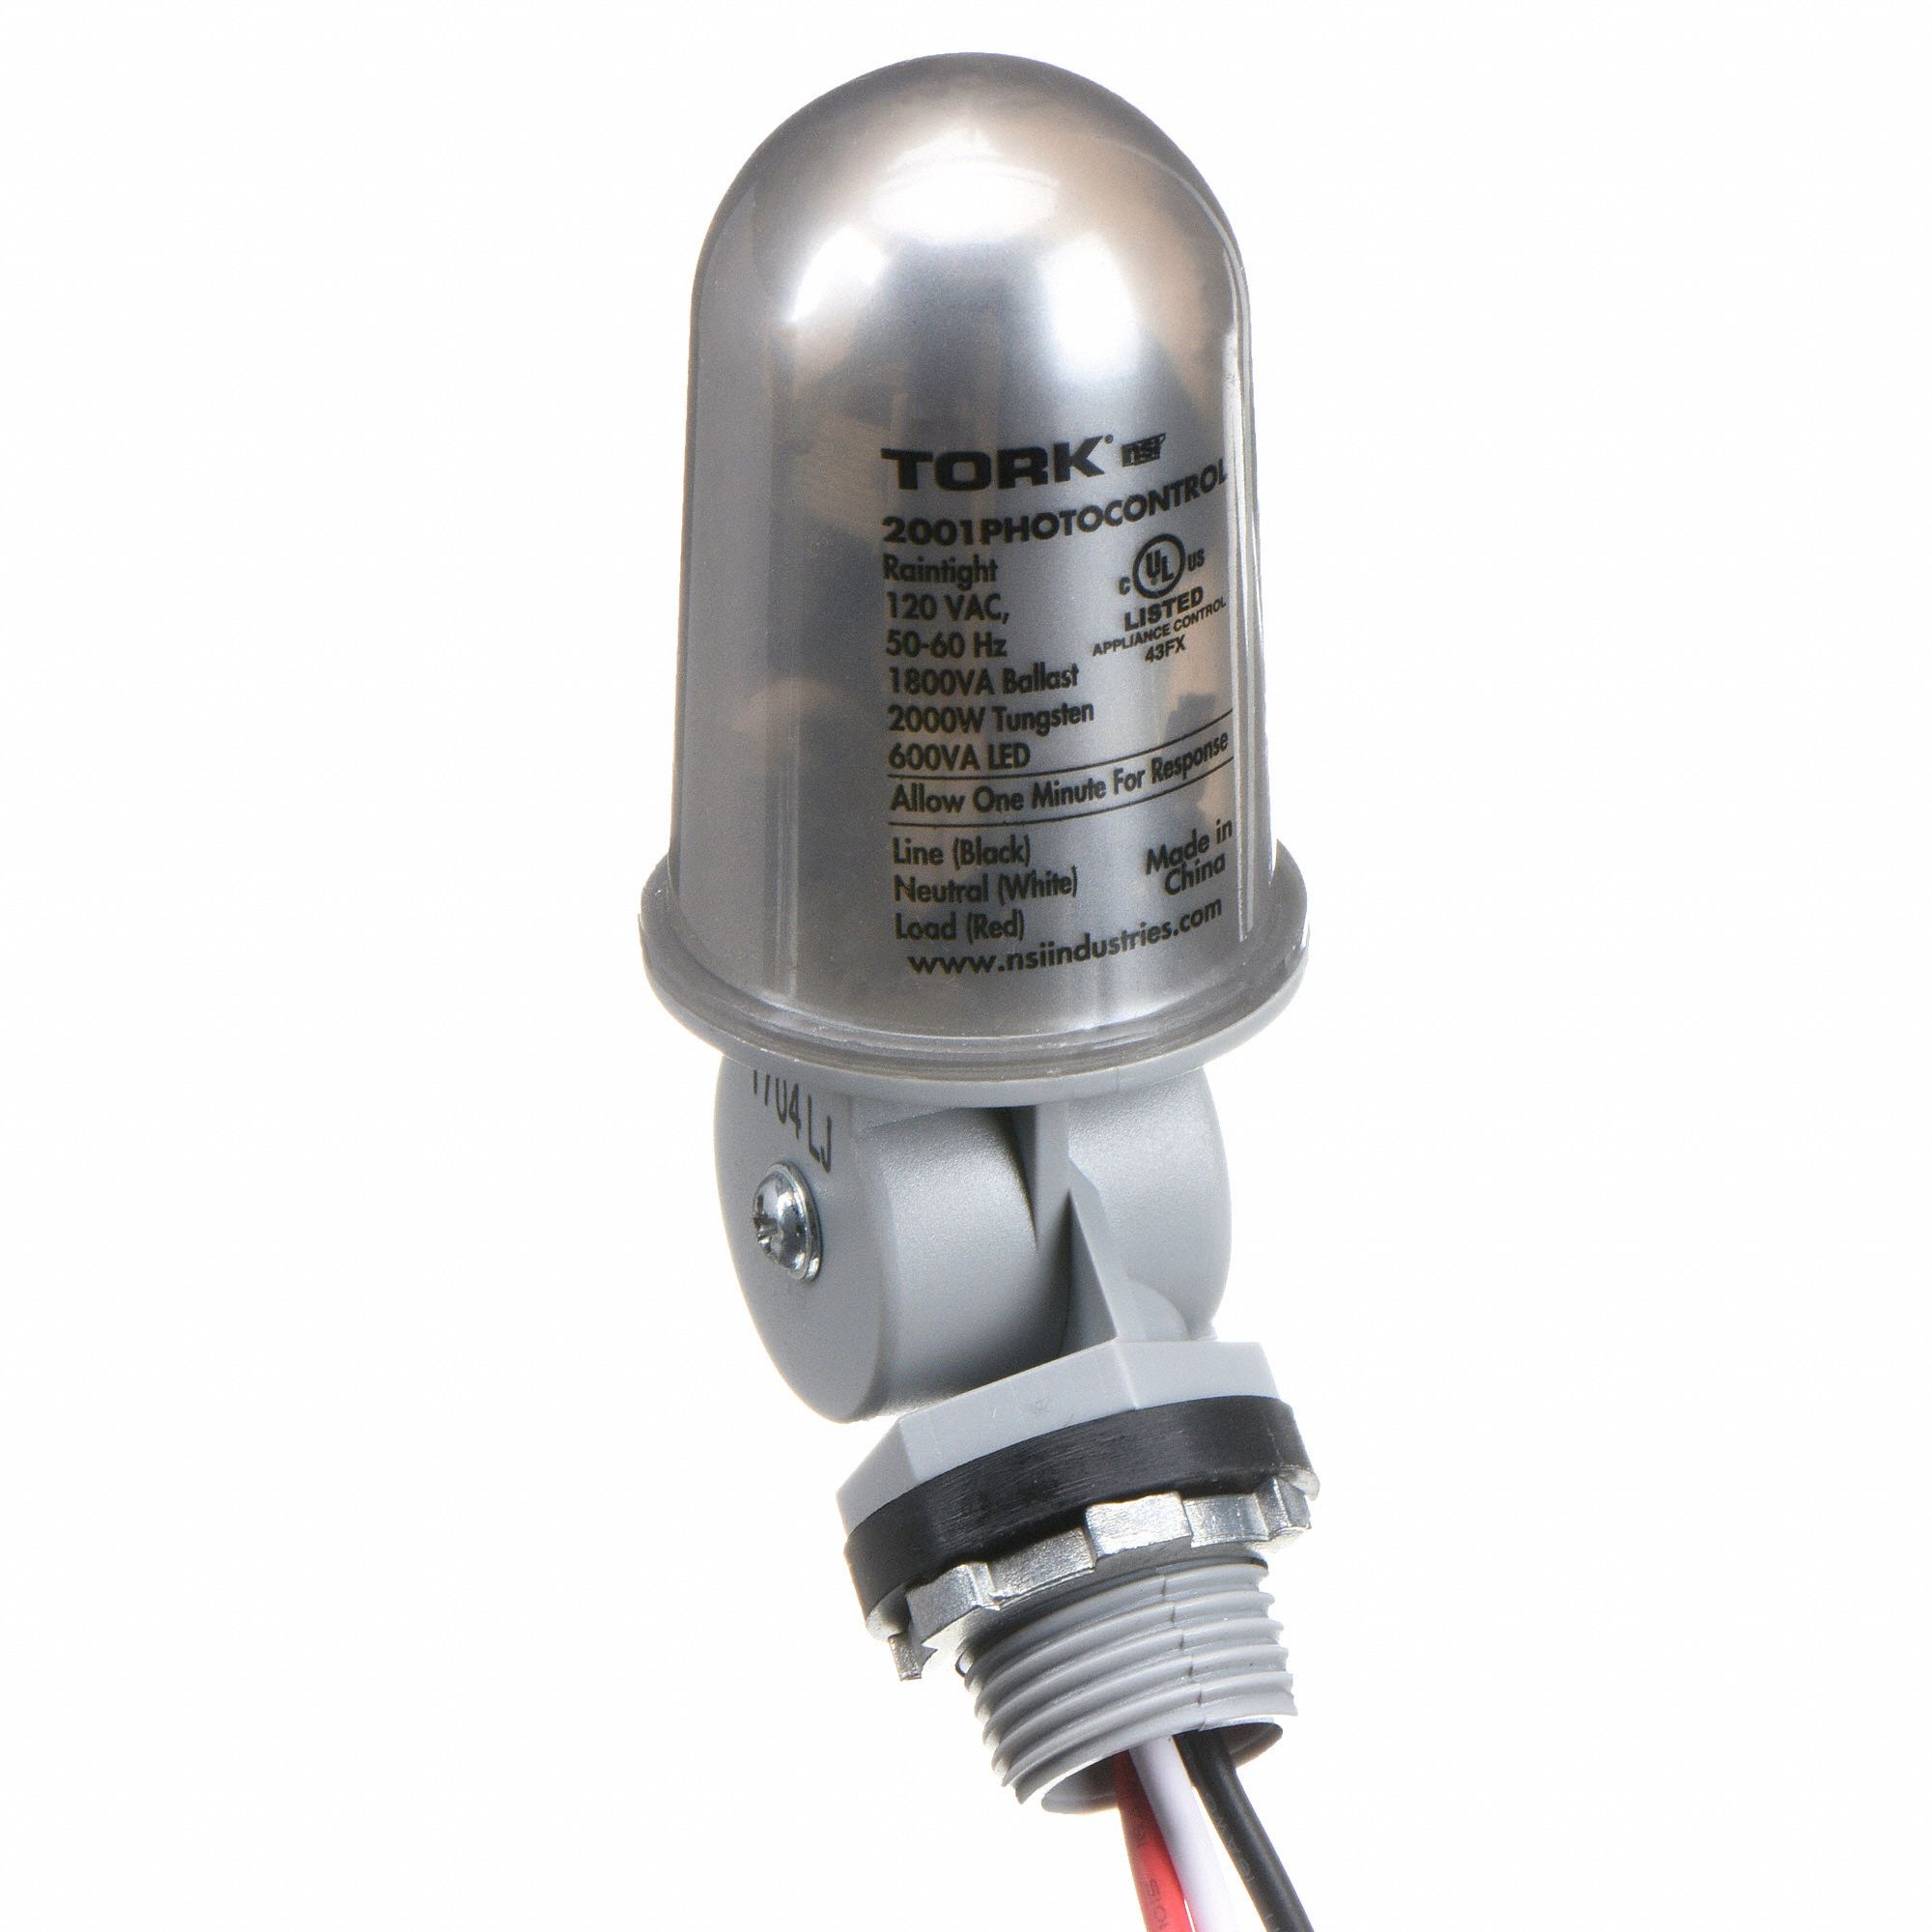 TORK Photocontrol: 120V AC, 2,000 Max. Watt, 16.7 A Max. Incandescent Amps,  15 A Max. Ballast Amps - 4JNP5|2001 - Grainger Intermatic Timer Wiring Diagram Grainger